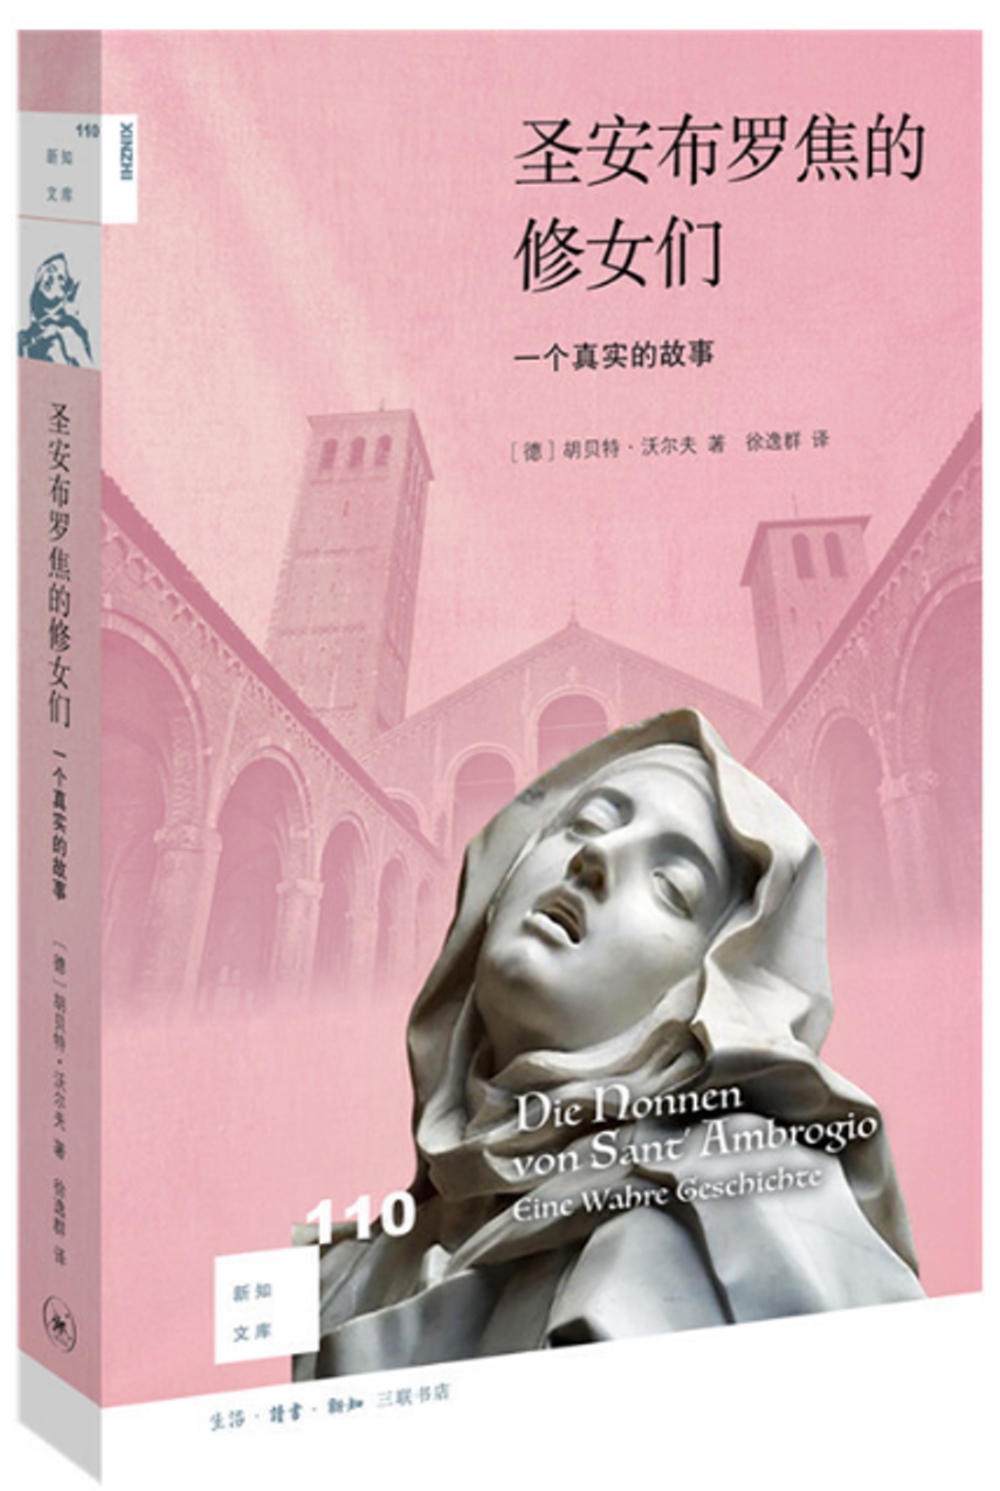 聖安布羅焦的修女們：一個真實的故事